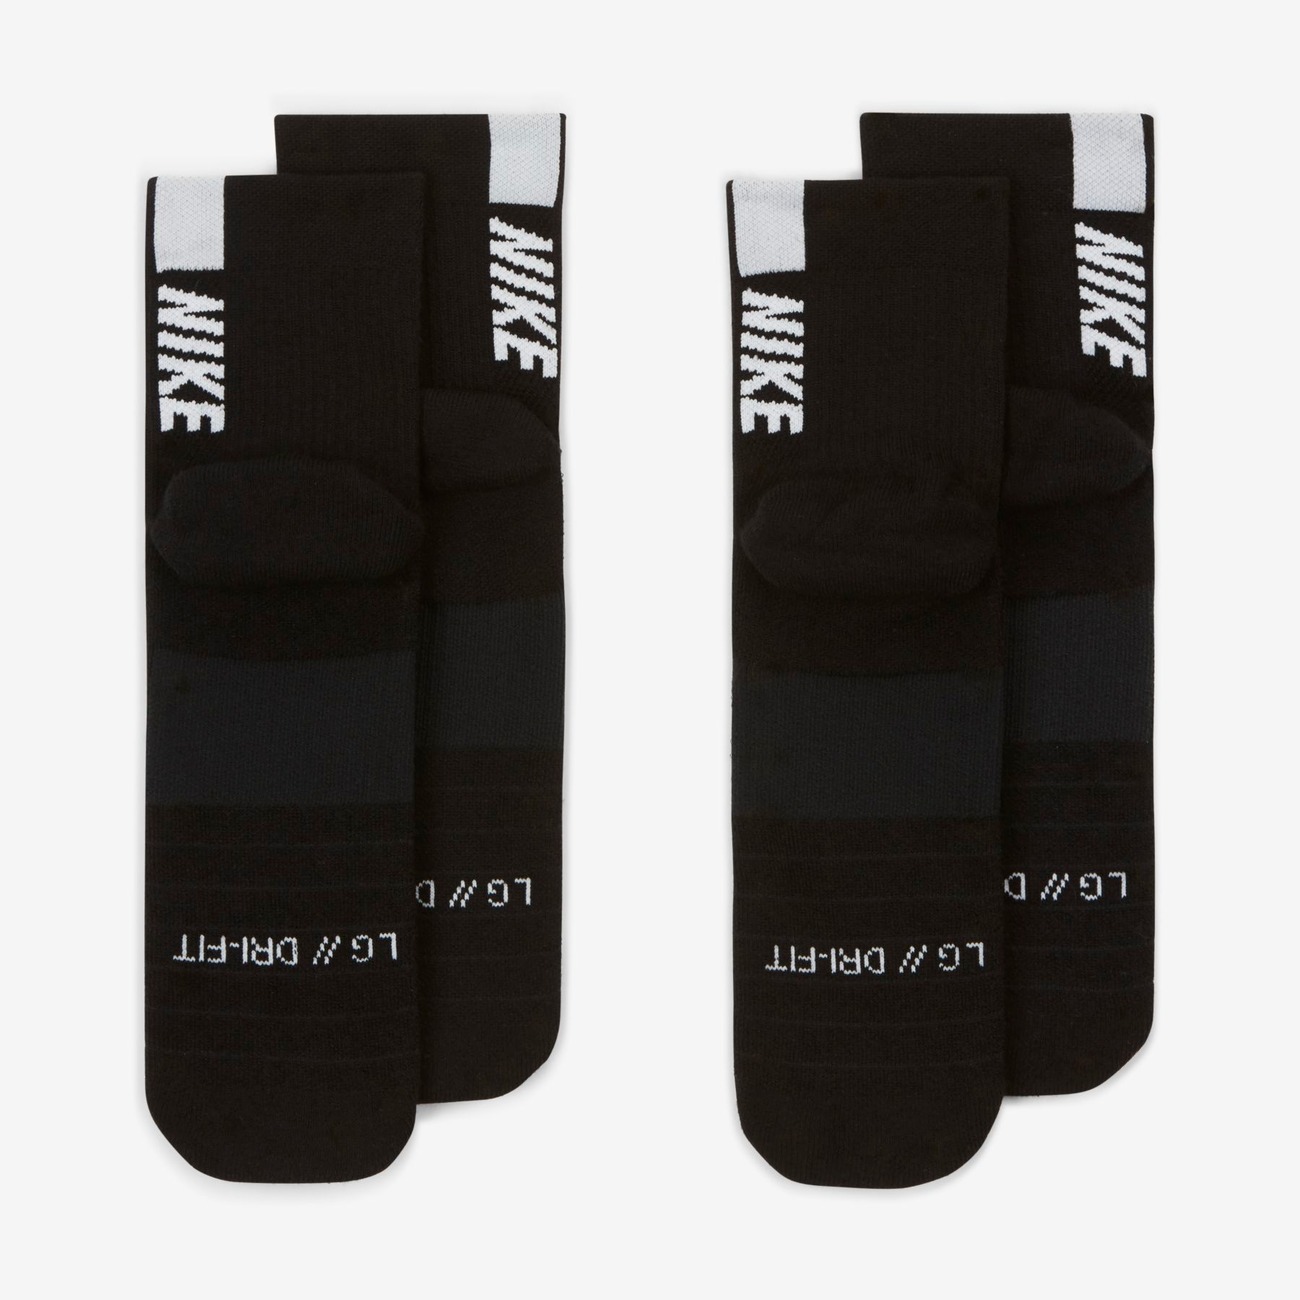 Meia Nike Multiplier Unissex - Foto 3